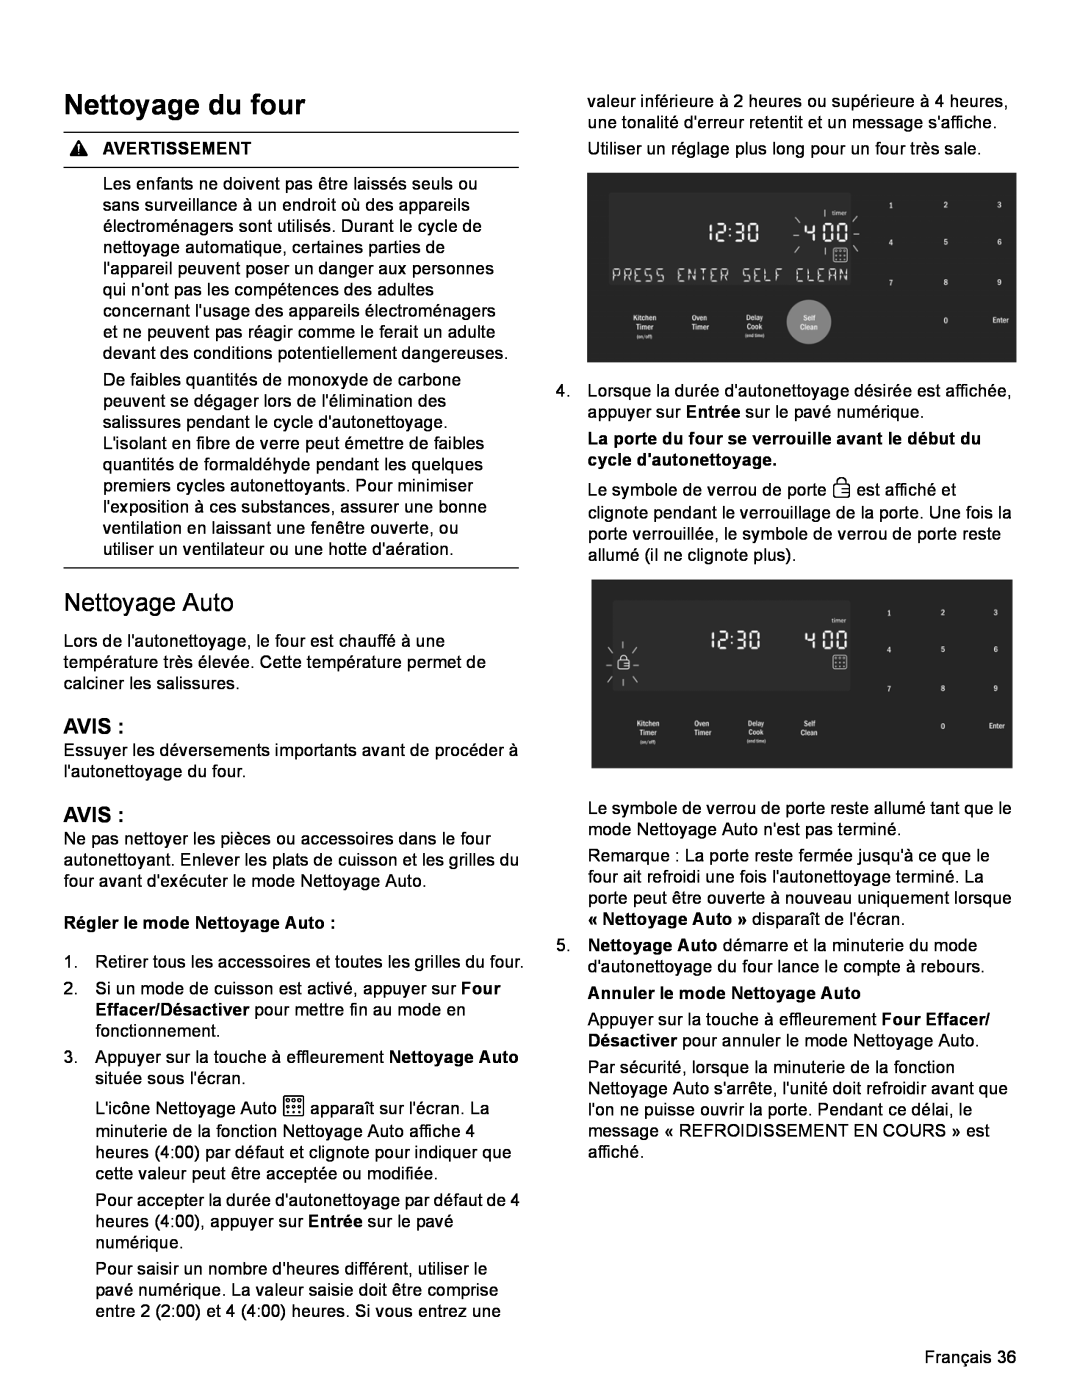 Bosch Appliances HDI8054U manual Nettoyage du four, Avis, Régler le mode Nettoyage Auto, Annuler le mode Nettoyage Auto 